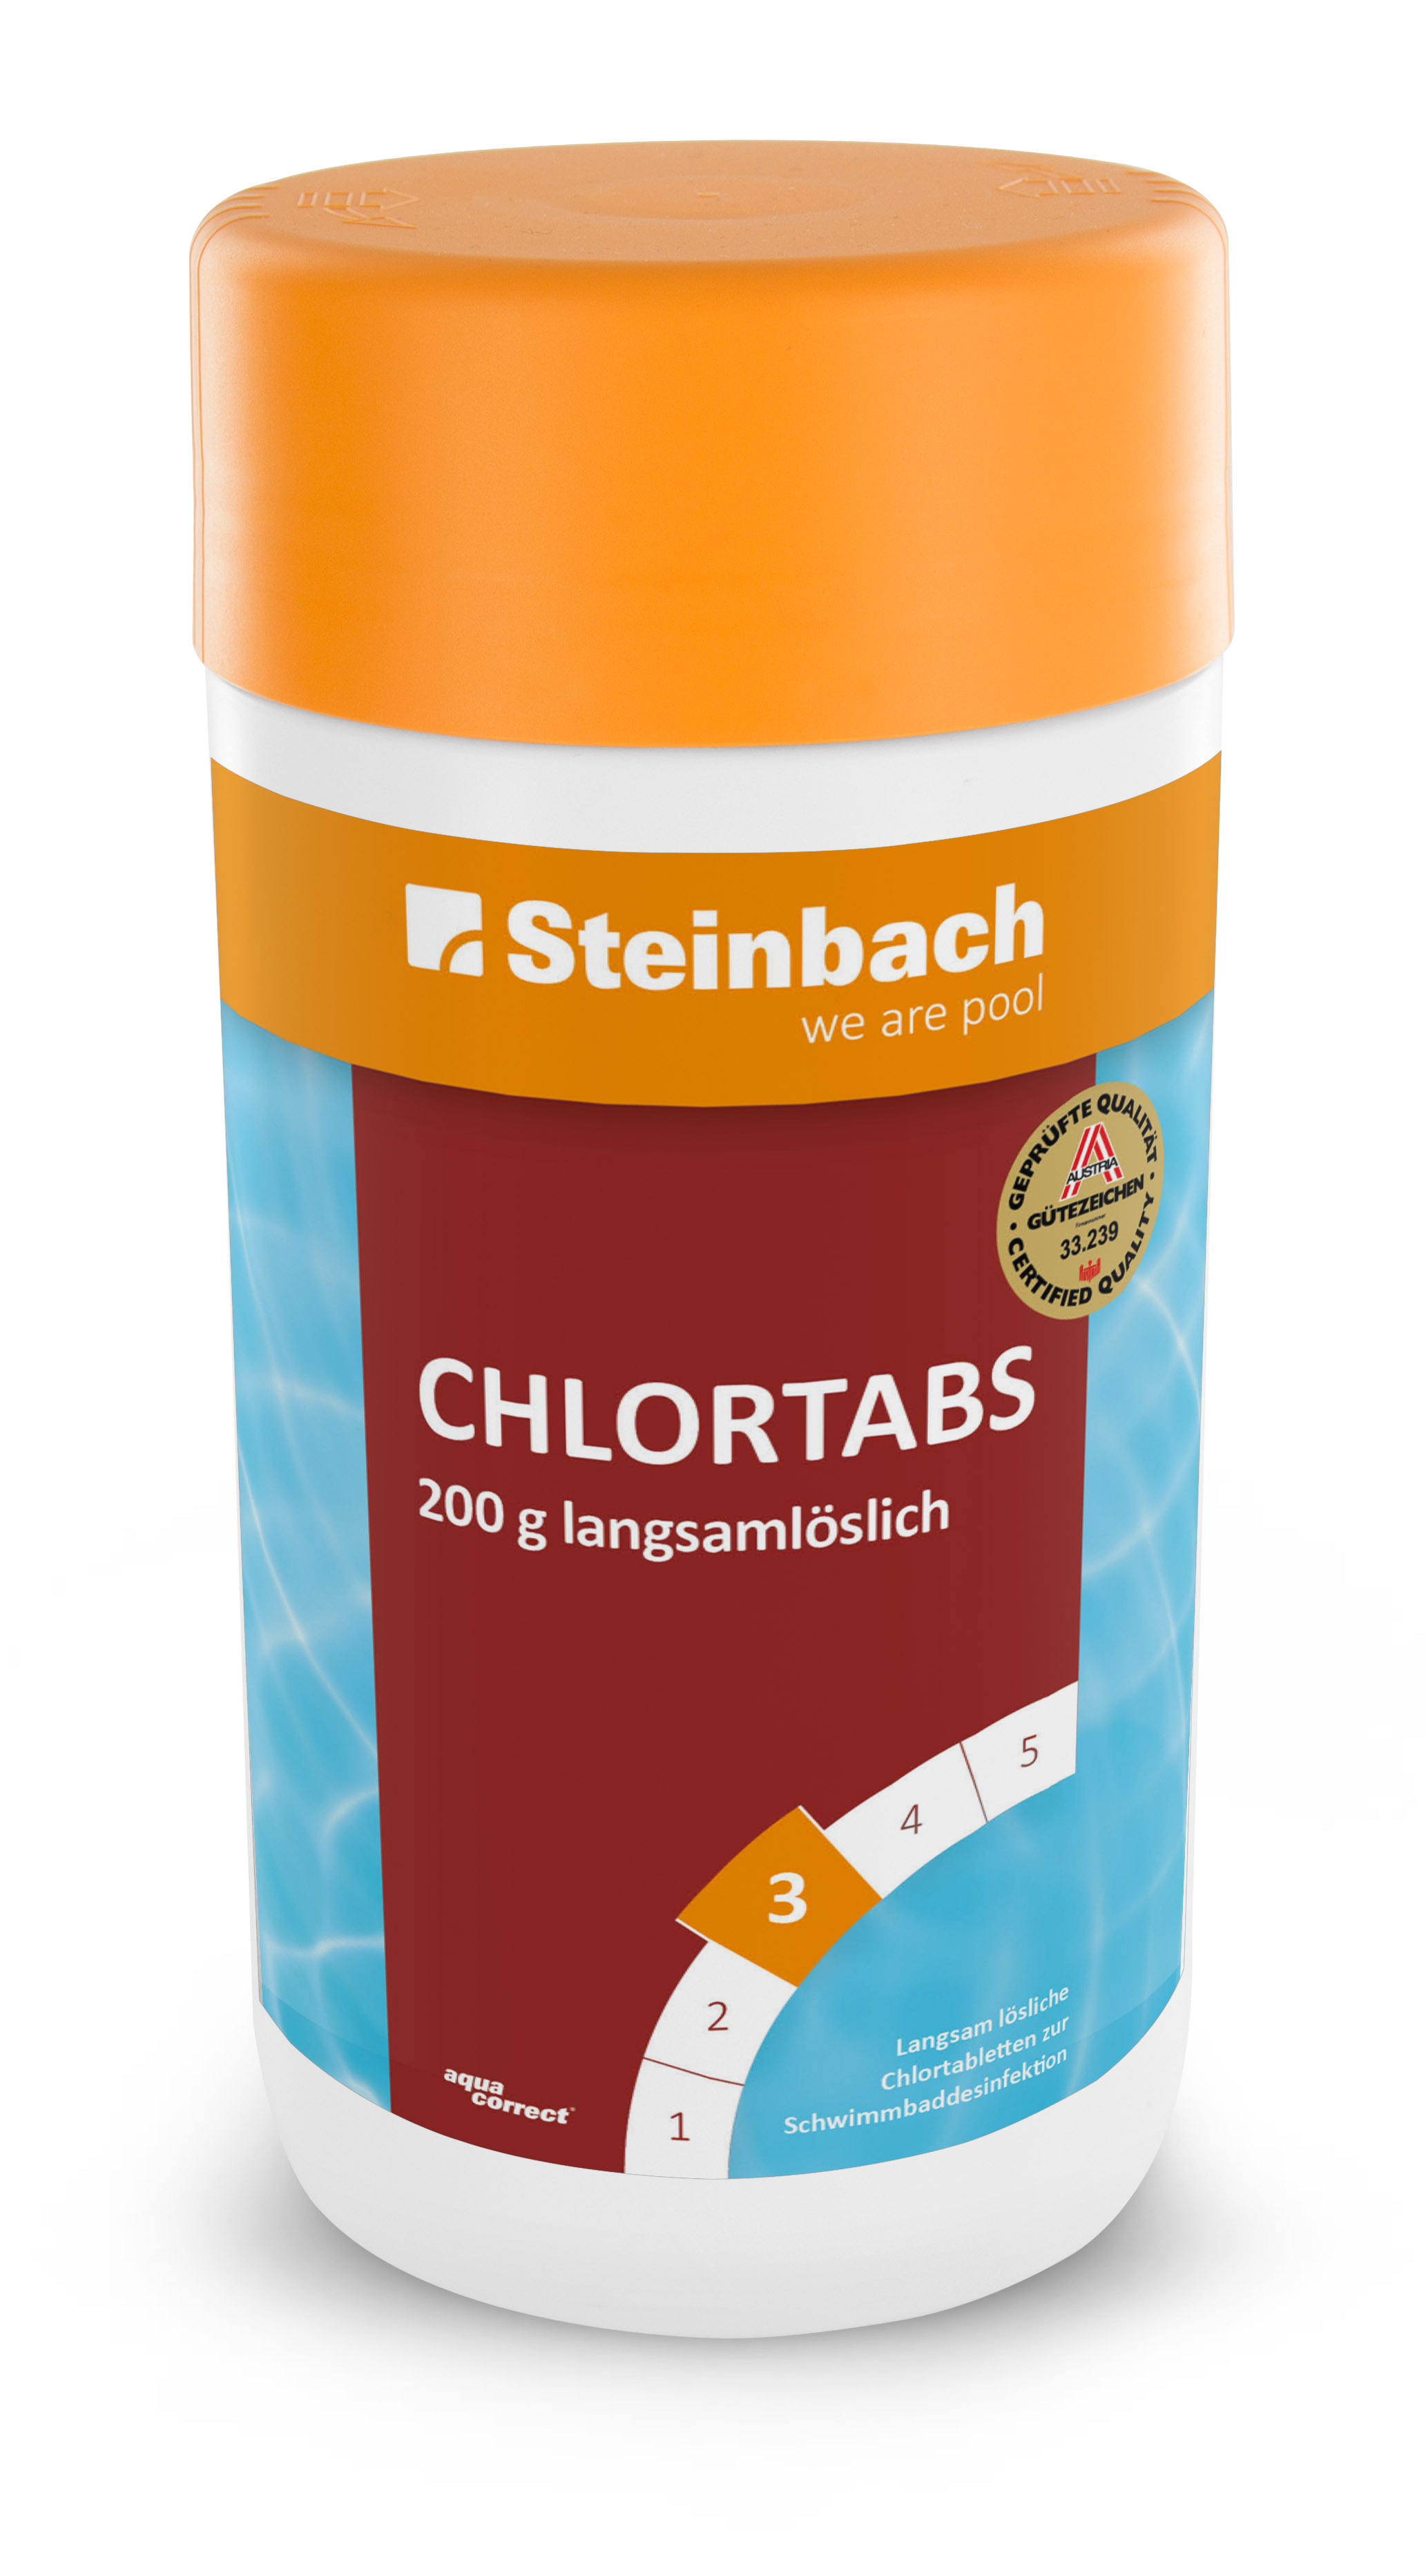 Steinbach Chlortabs 200g langsamlöslich, 1 kg